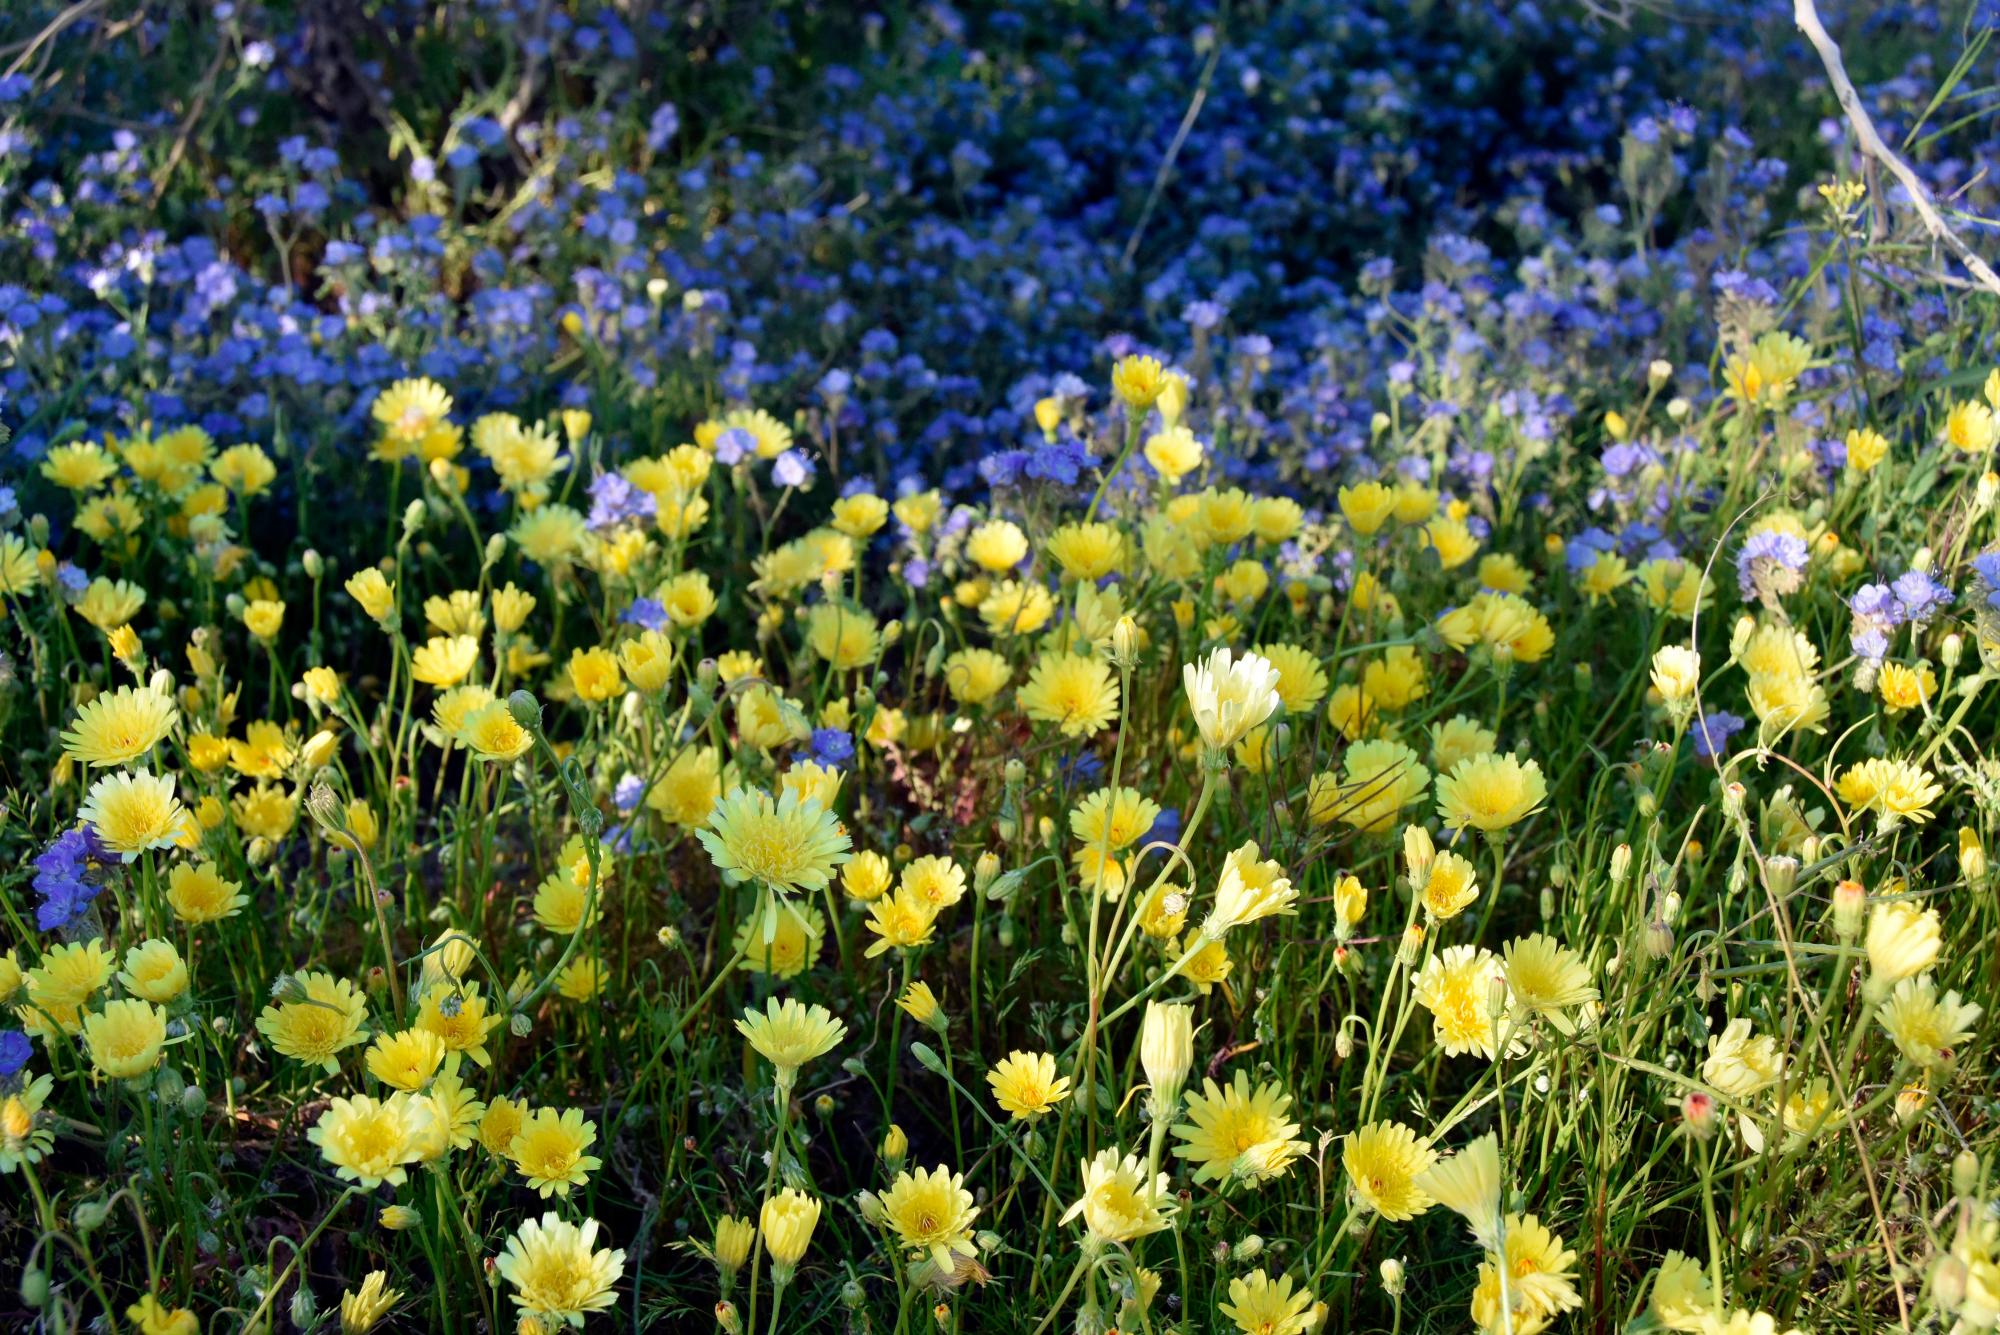 SAN DIEGO (CA, EEUU), 10/03/2019.- Fotografía del 7 de marzo donde aparece un manto temporal de flores silvestres en el Parque Estatal del Desierto de Anza-Borrego en el condado de San Diego, California. En el desierto californiano de Anza-Borrego, como resultado de inviernos muy húmedos, florece un colorido jardín que atrae a amantes de la naturaleza para admirar un fenómeno cíclico, que en lo que va del presente siglo ha ocurrido cuatro veces. EFE/Iván Mejía